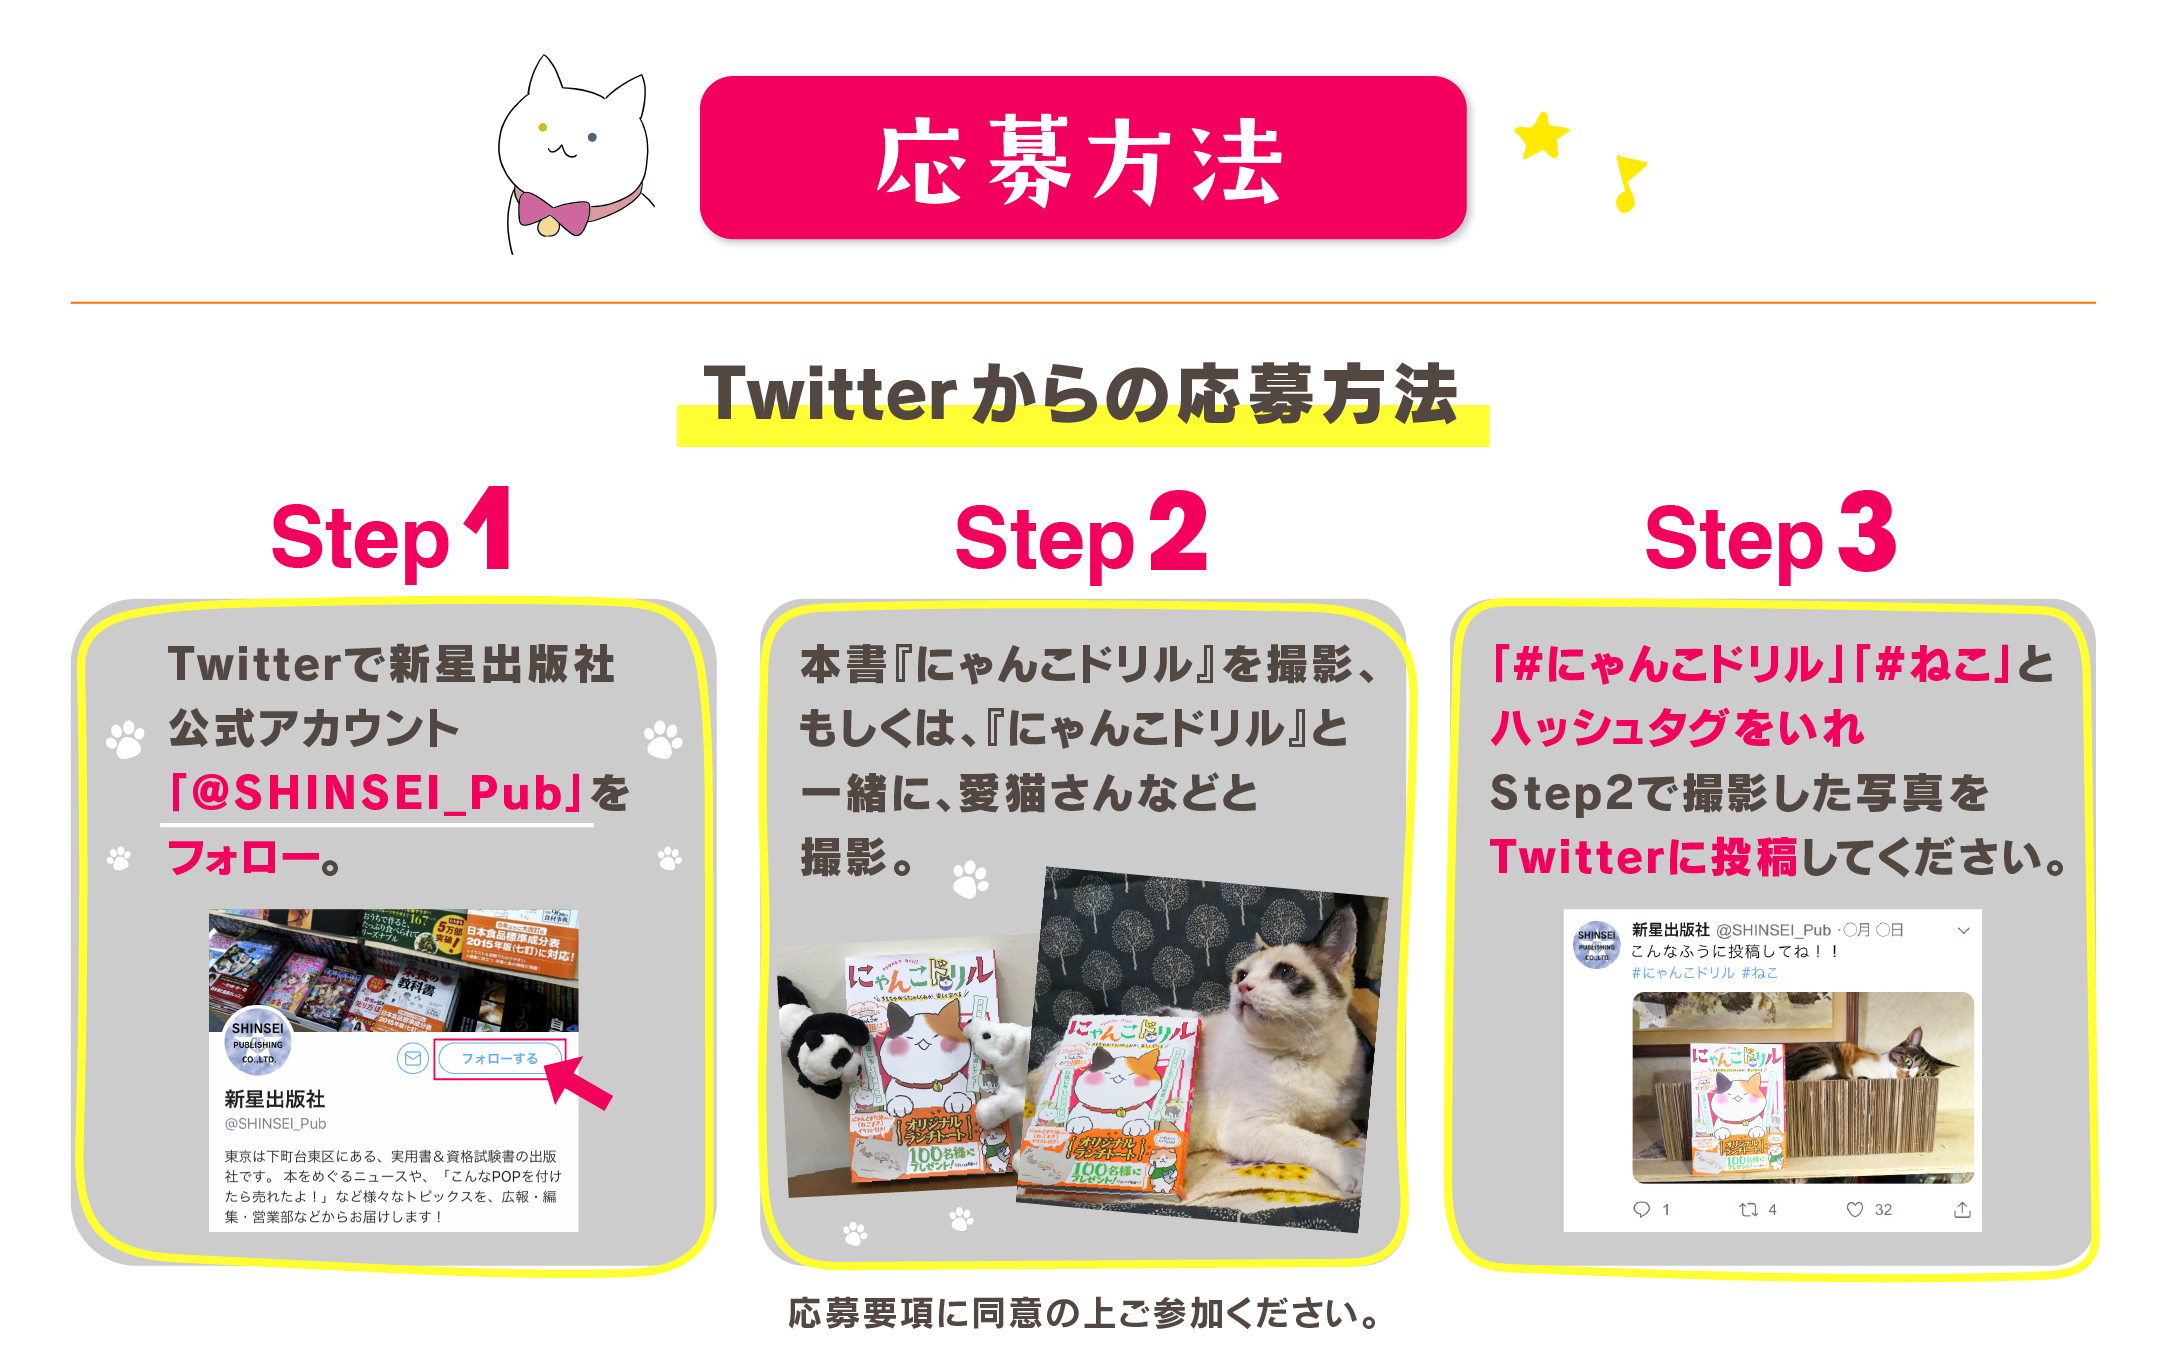 『にゃんこドリル』発売記念プレゼントキャンペーンTwitterからの応募方法：Step1 Twitterで新星出版社公式アカウント「@SHINSEI_PUB」をフォロー STEP2 本書『にゃんこドリル』と一緒に、愛猫さん、ノラ猫さんetc….と撮影。STEP4 「#にゃんこドリル」「#ねこ」とハッシュタグをいれStep2で撮影した写真をTwitterに投稿してください。